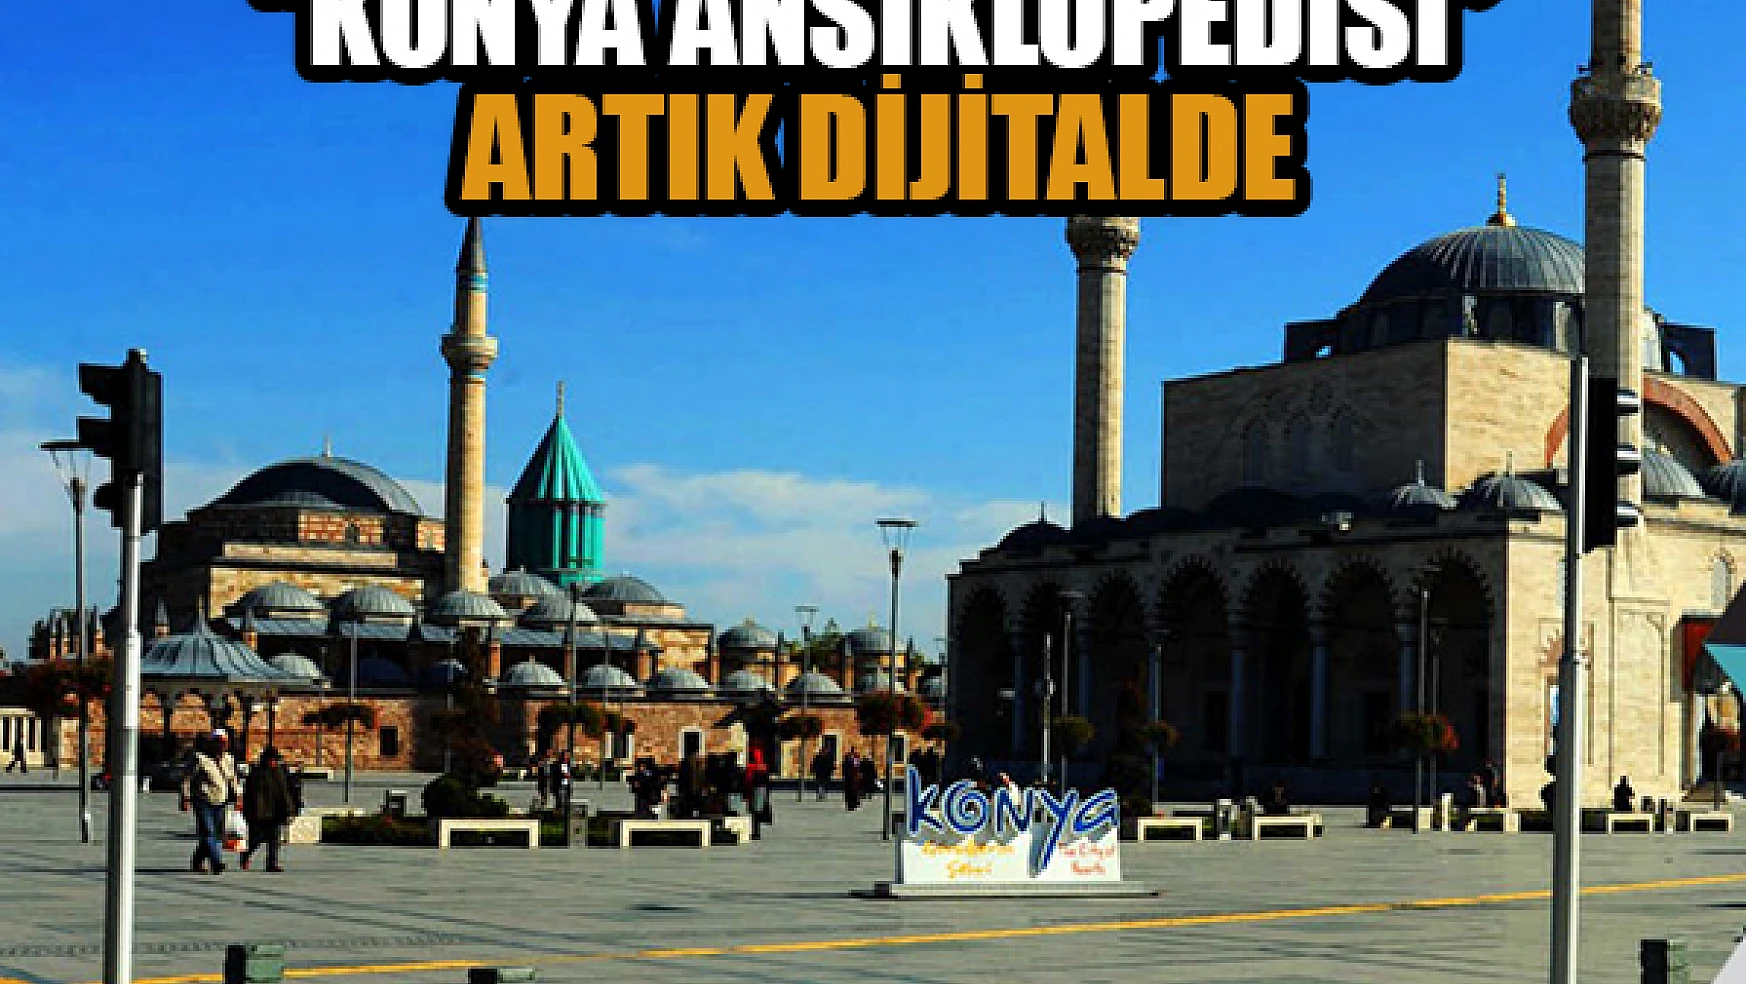 'Konya Ansiklopedisi' artık dijital